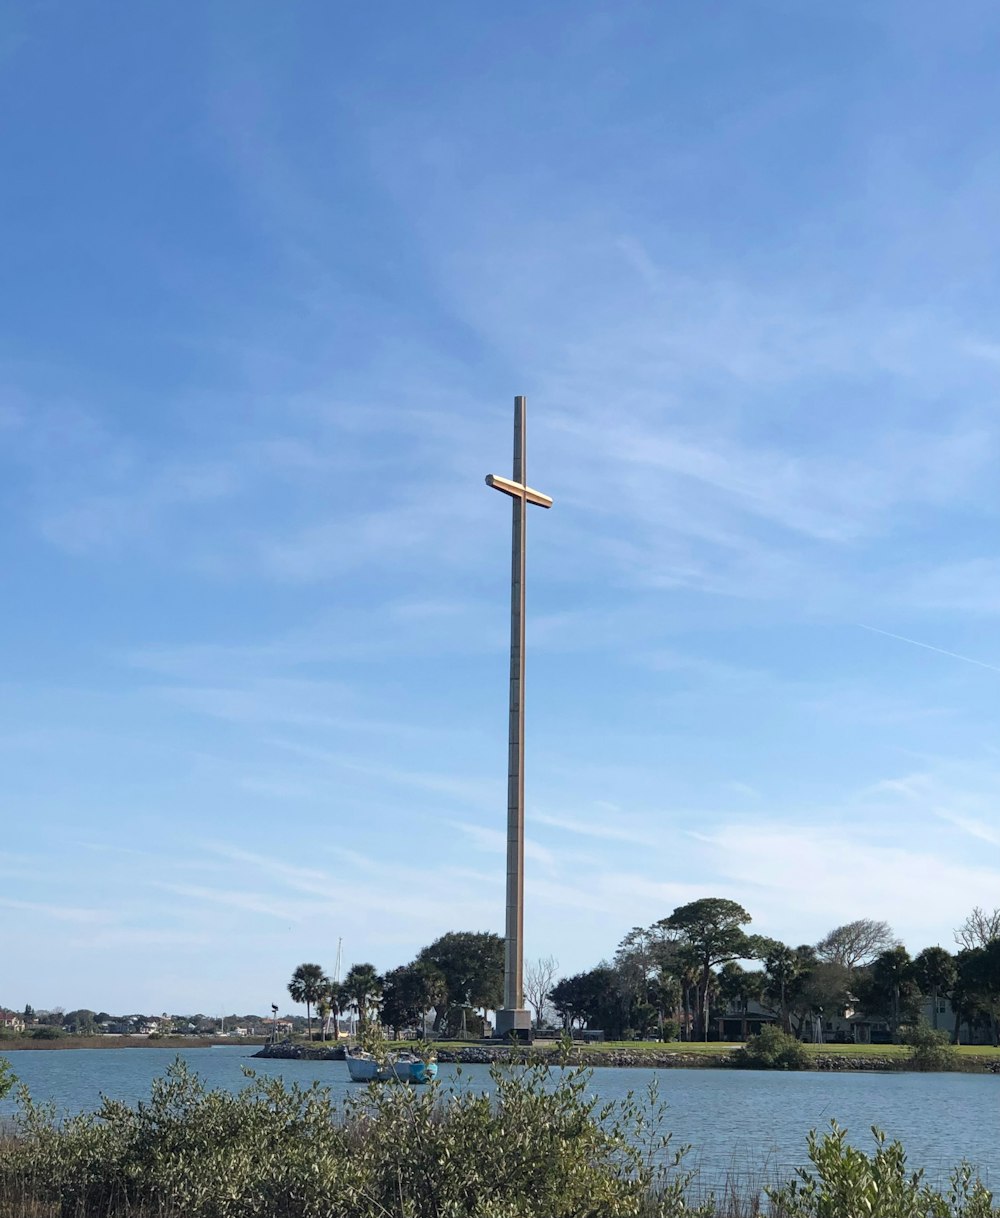 a cross on a pole near a body of water